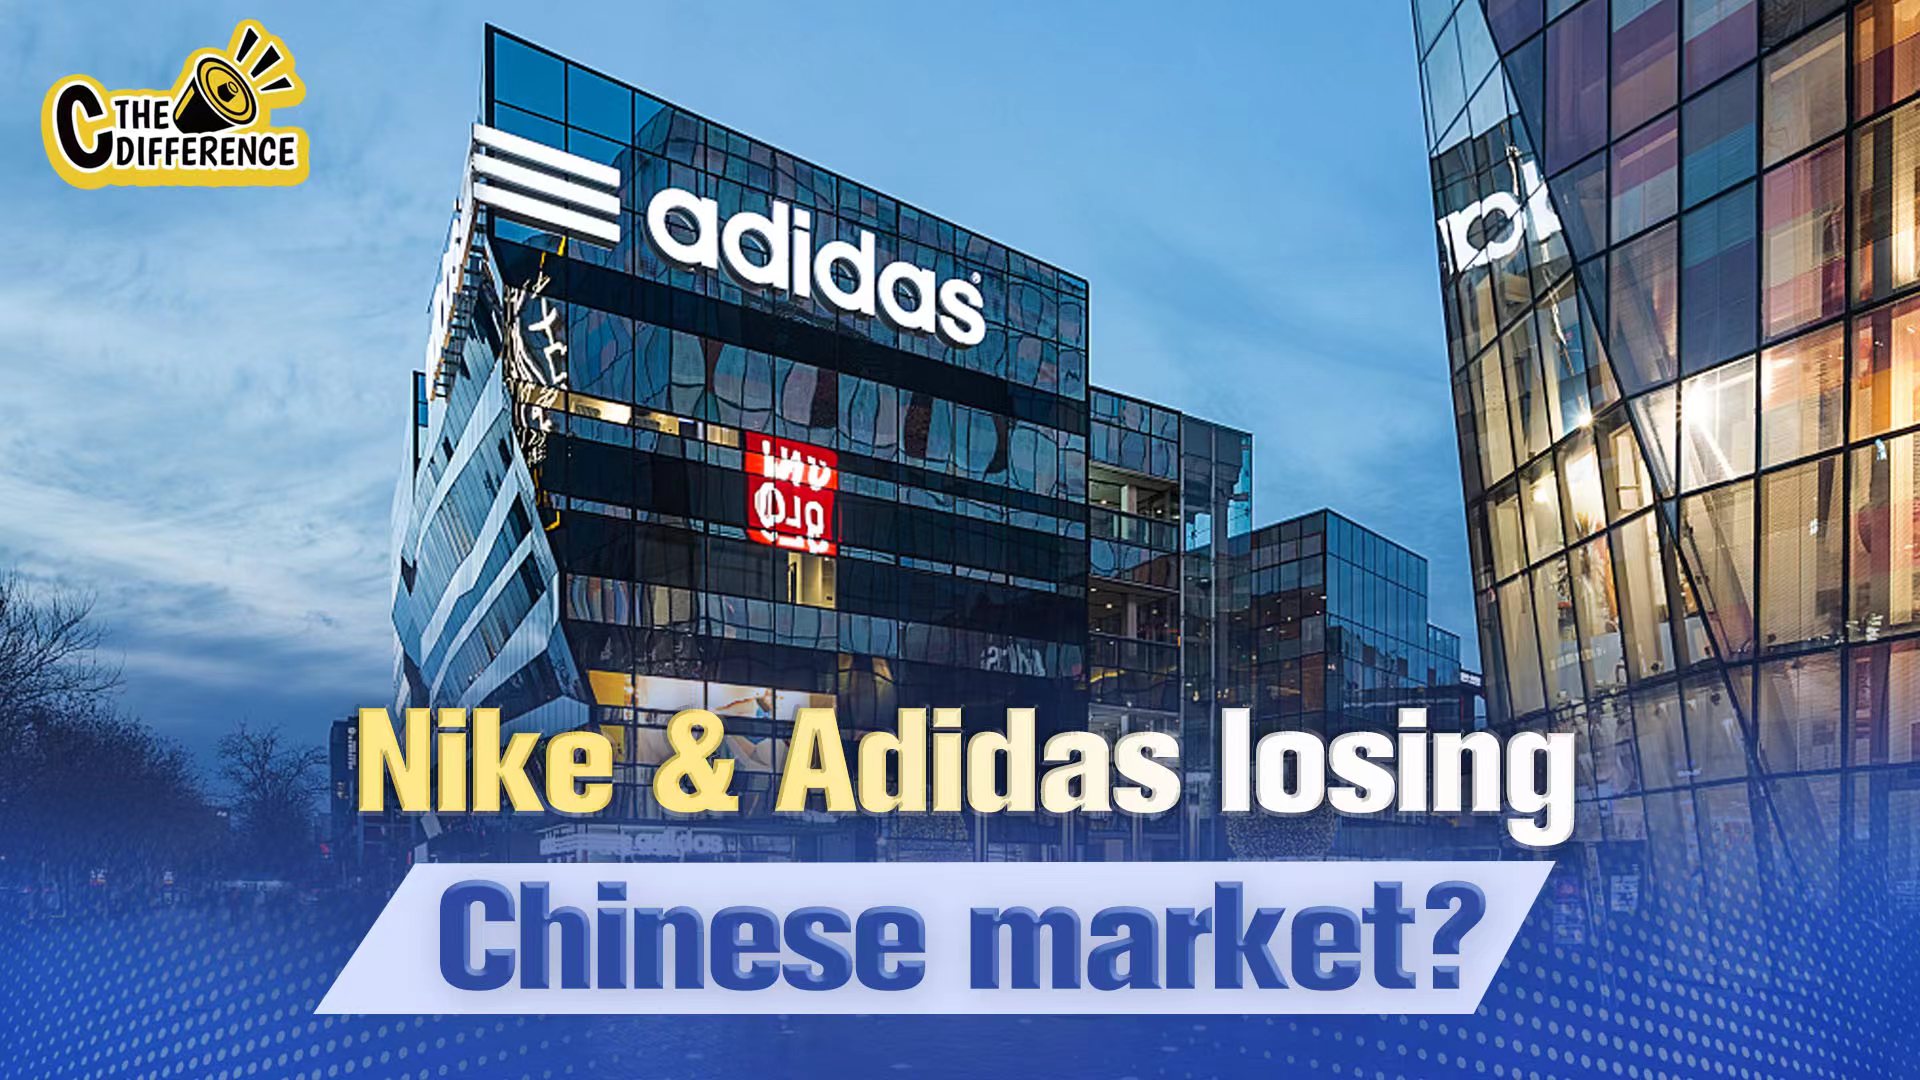 El extraño colección Regaño Are Nike and Adidas losing the Chinese market? - CGTN